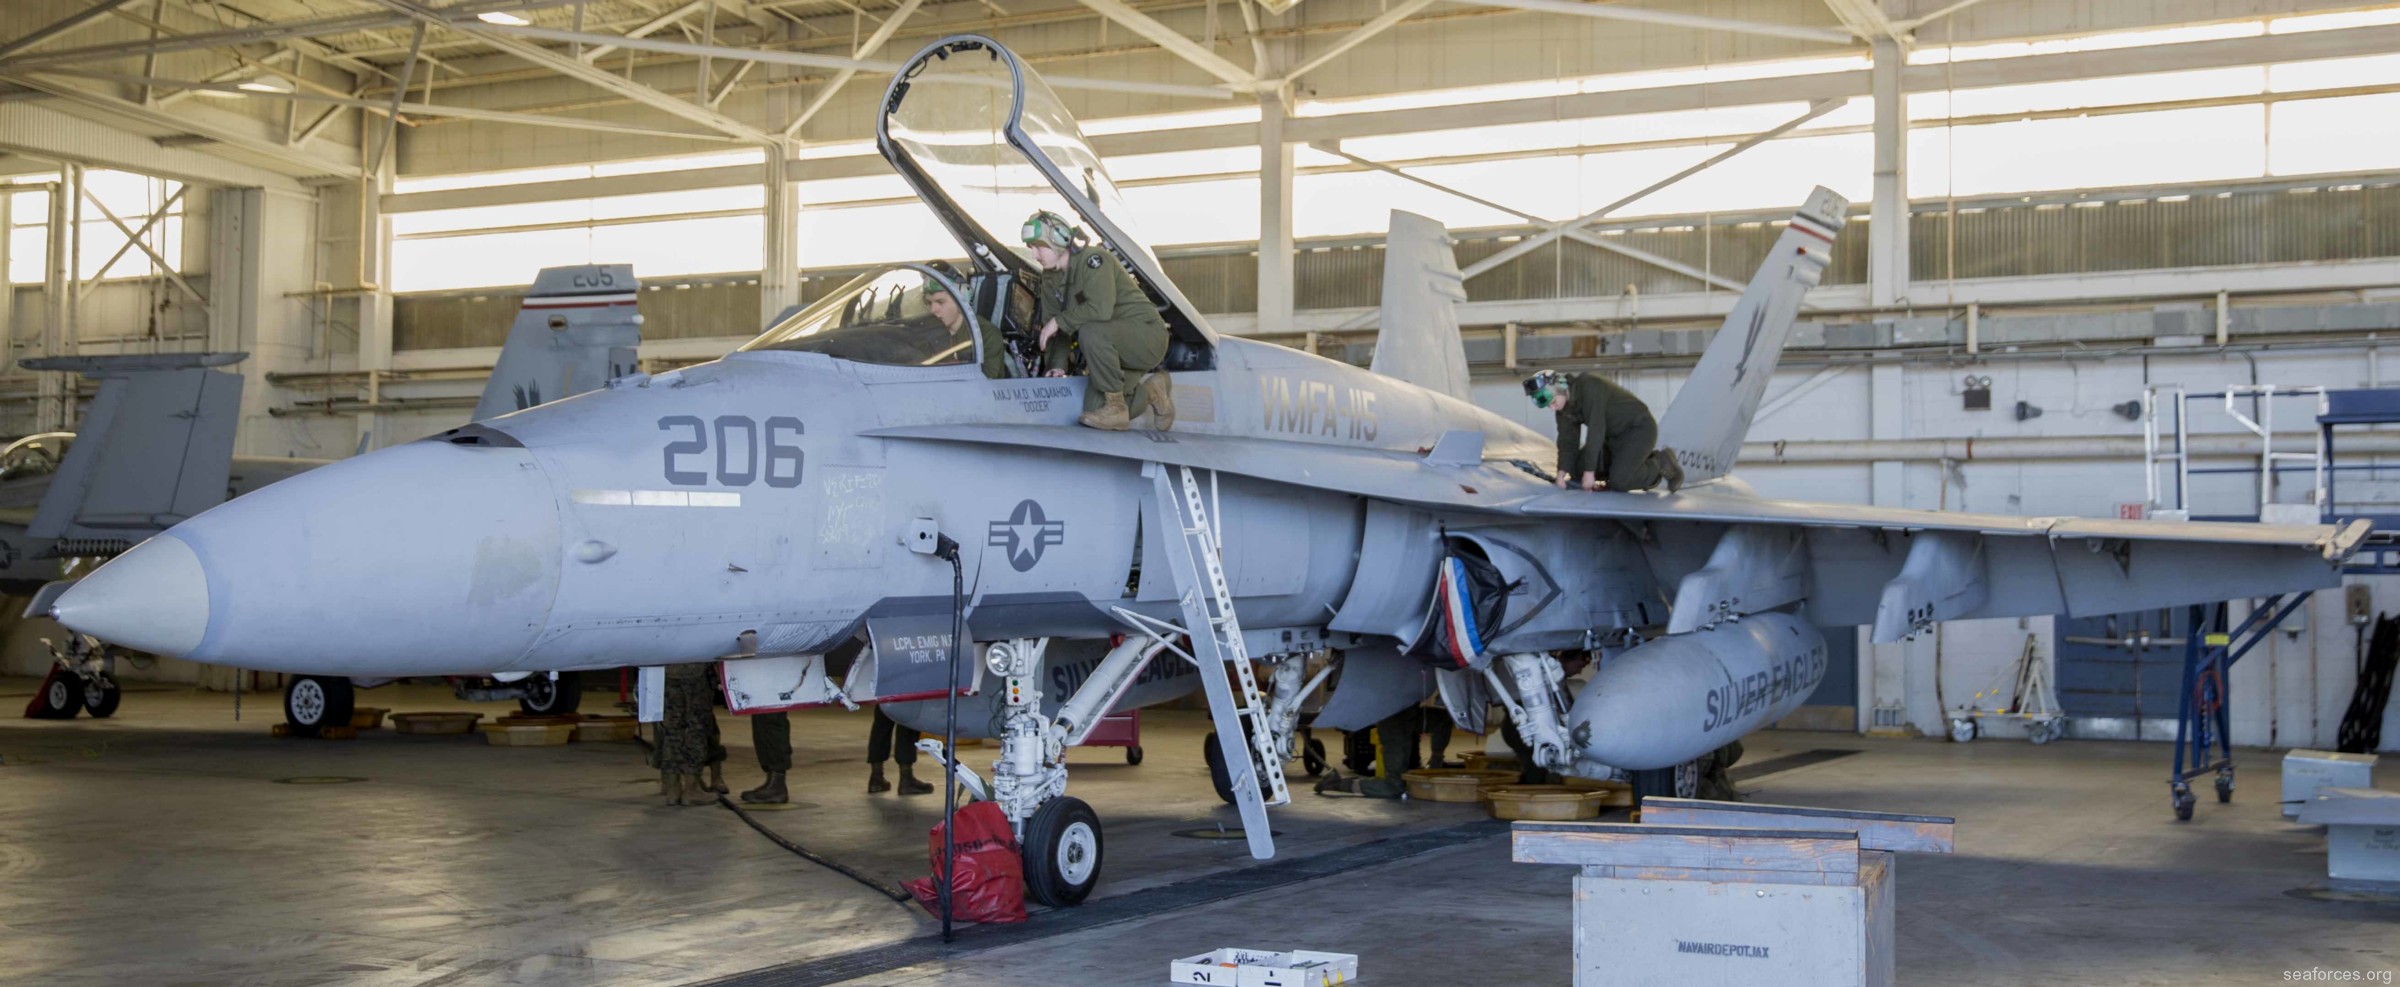 vmfa-115 silver eagles marine fighter attack squadron f/a-18a+ hornet 130